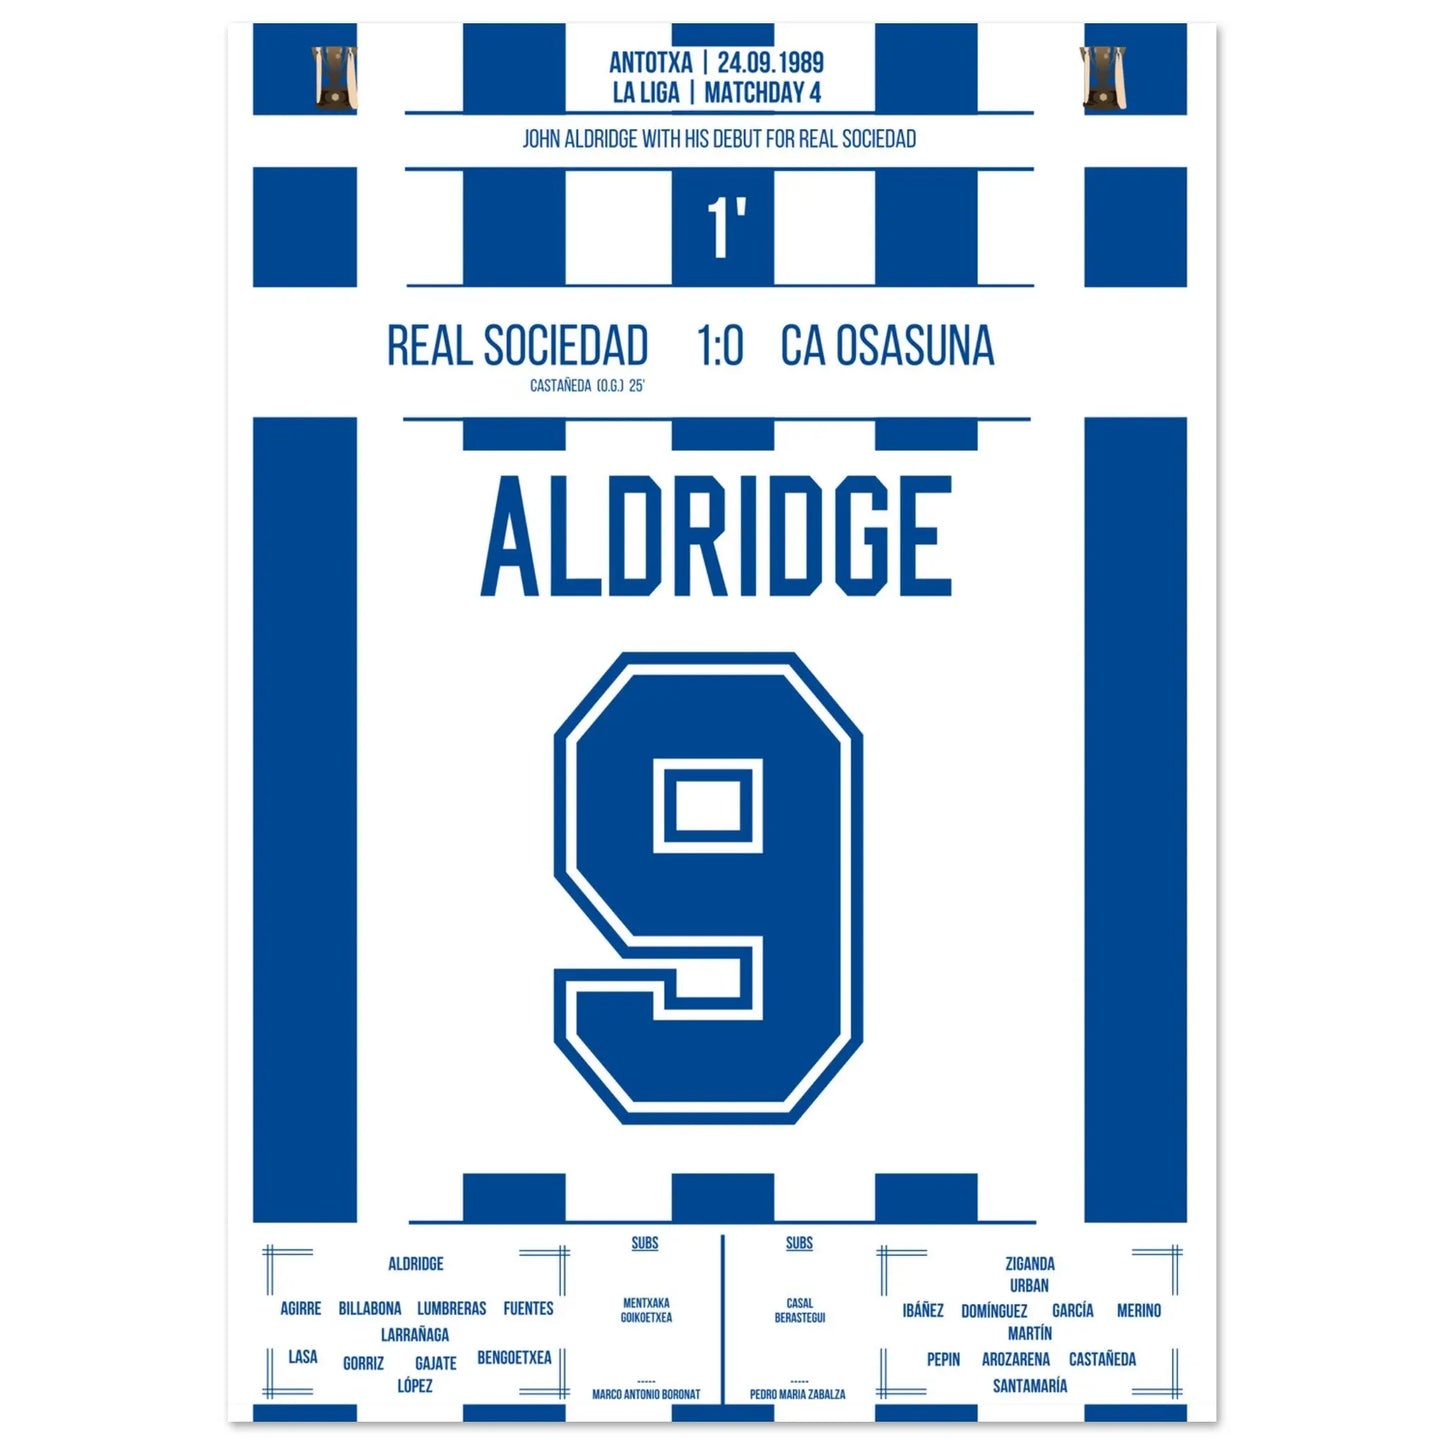 El debut de John Aldridge con la Real Sociedad